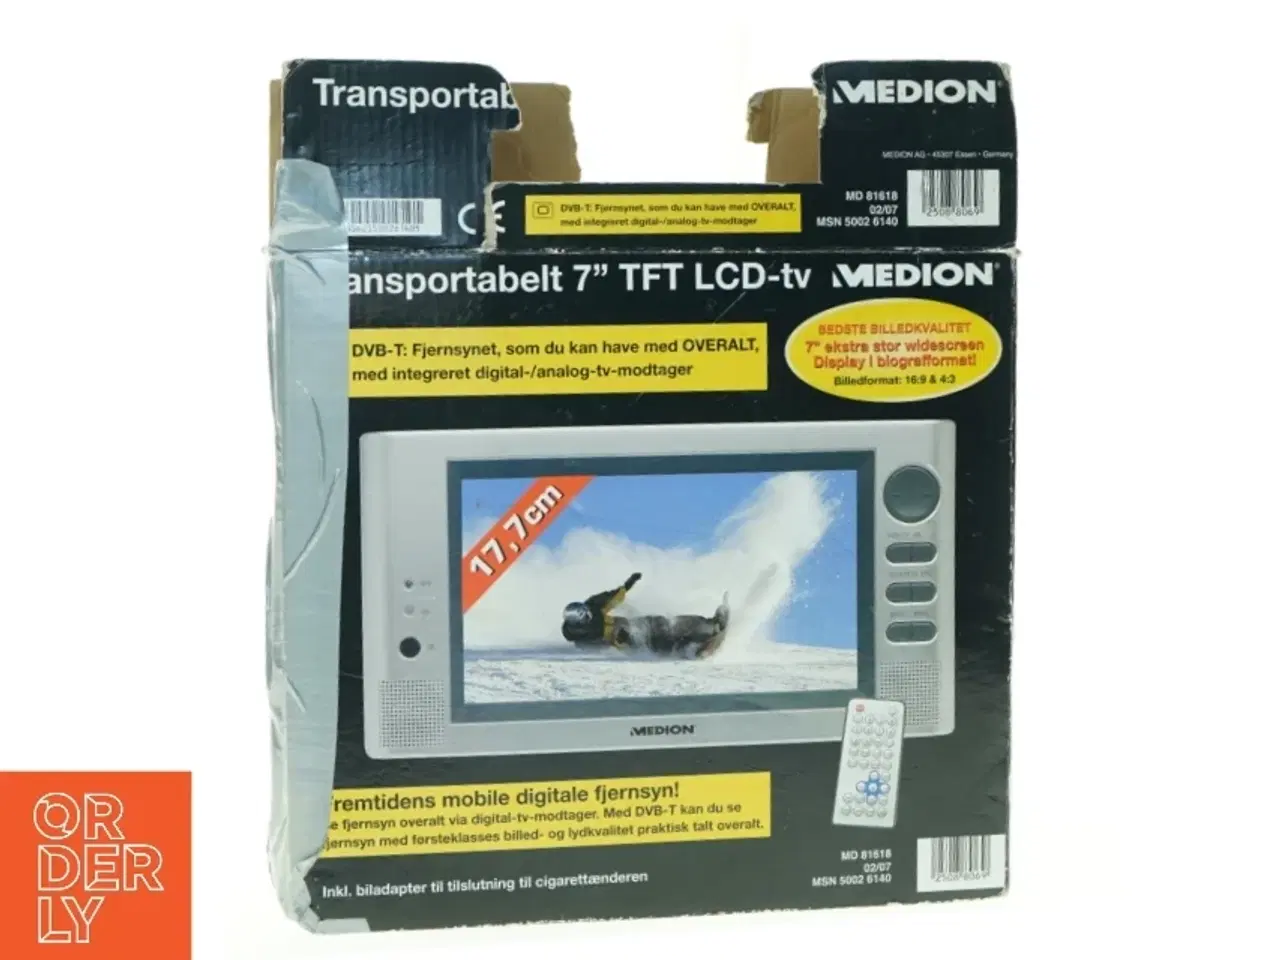 Billede 1 - Medion transportabel 7'' TFT LCD-tv fra Medion (str. 24 x 15 cm)